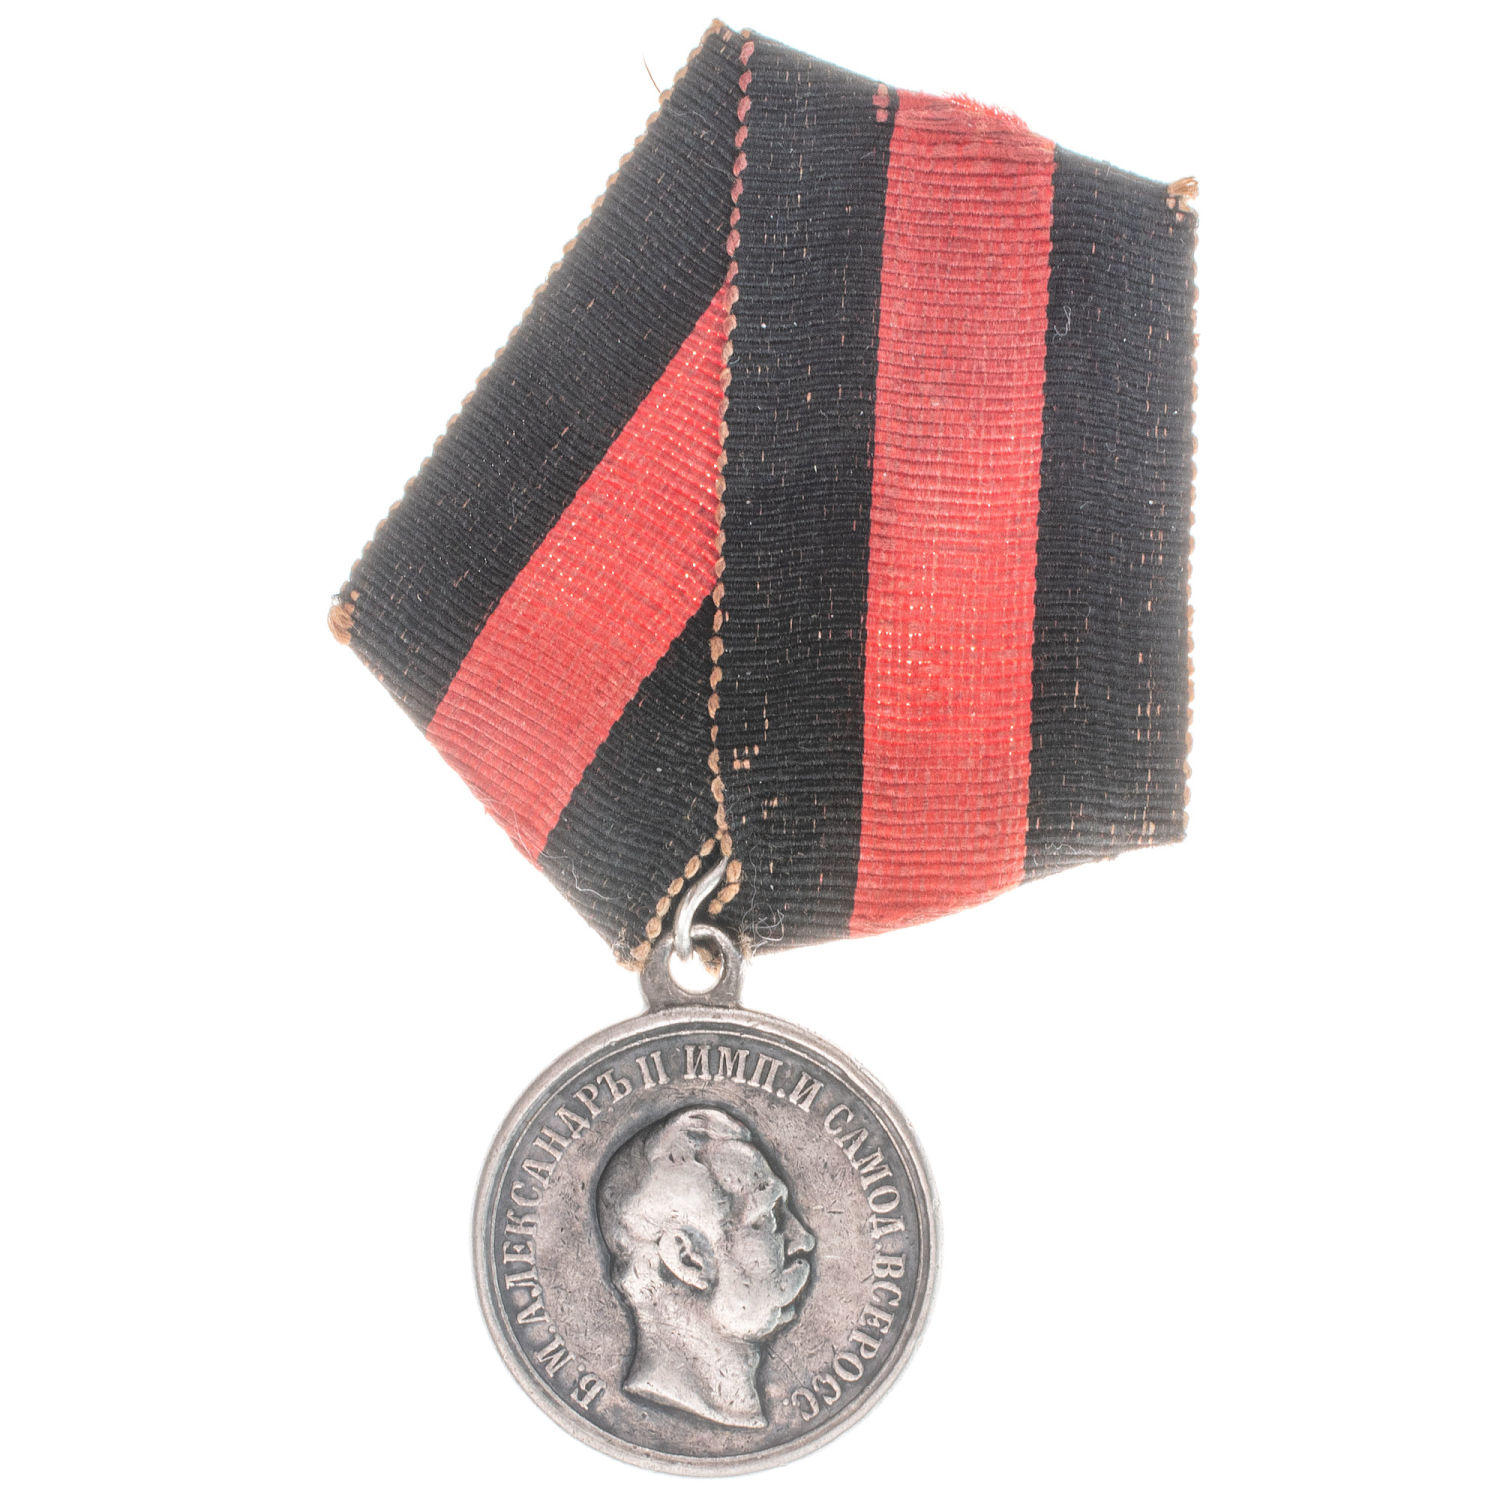 Медаль "Кавказ 1871 года" - для горцев, состоящих в конвое при посещении Кавказа Императором Александром II на ленте, сложенной в виде колодки.